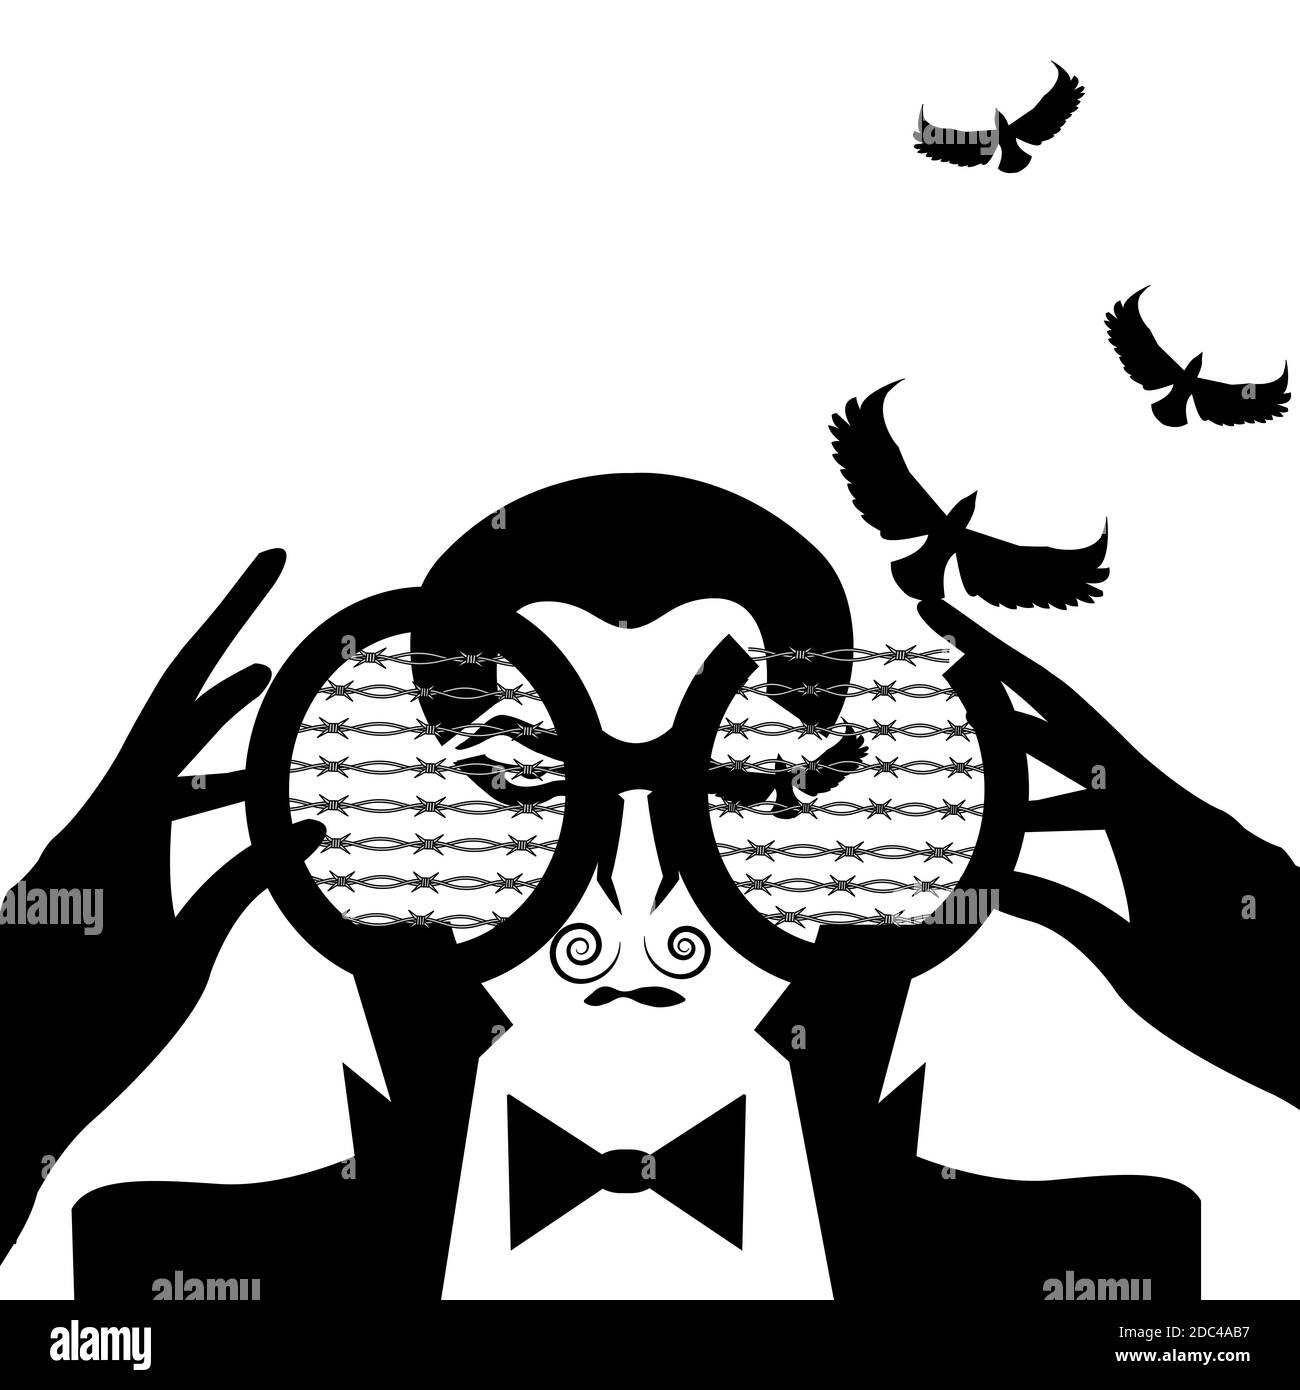 illustrazione di un uomo che guarda attraverso un binnacle e che ha occhi nella forma di uccelli che stanno decollo, isolato su bianco Foto Stock